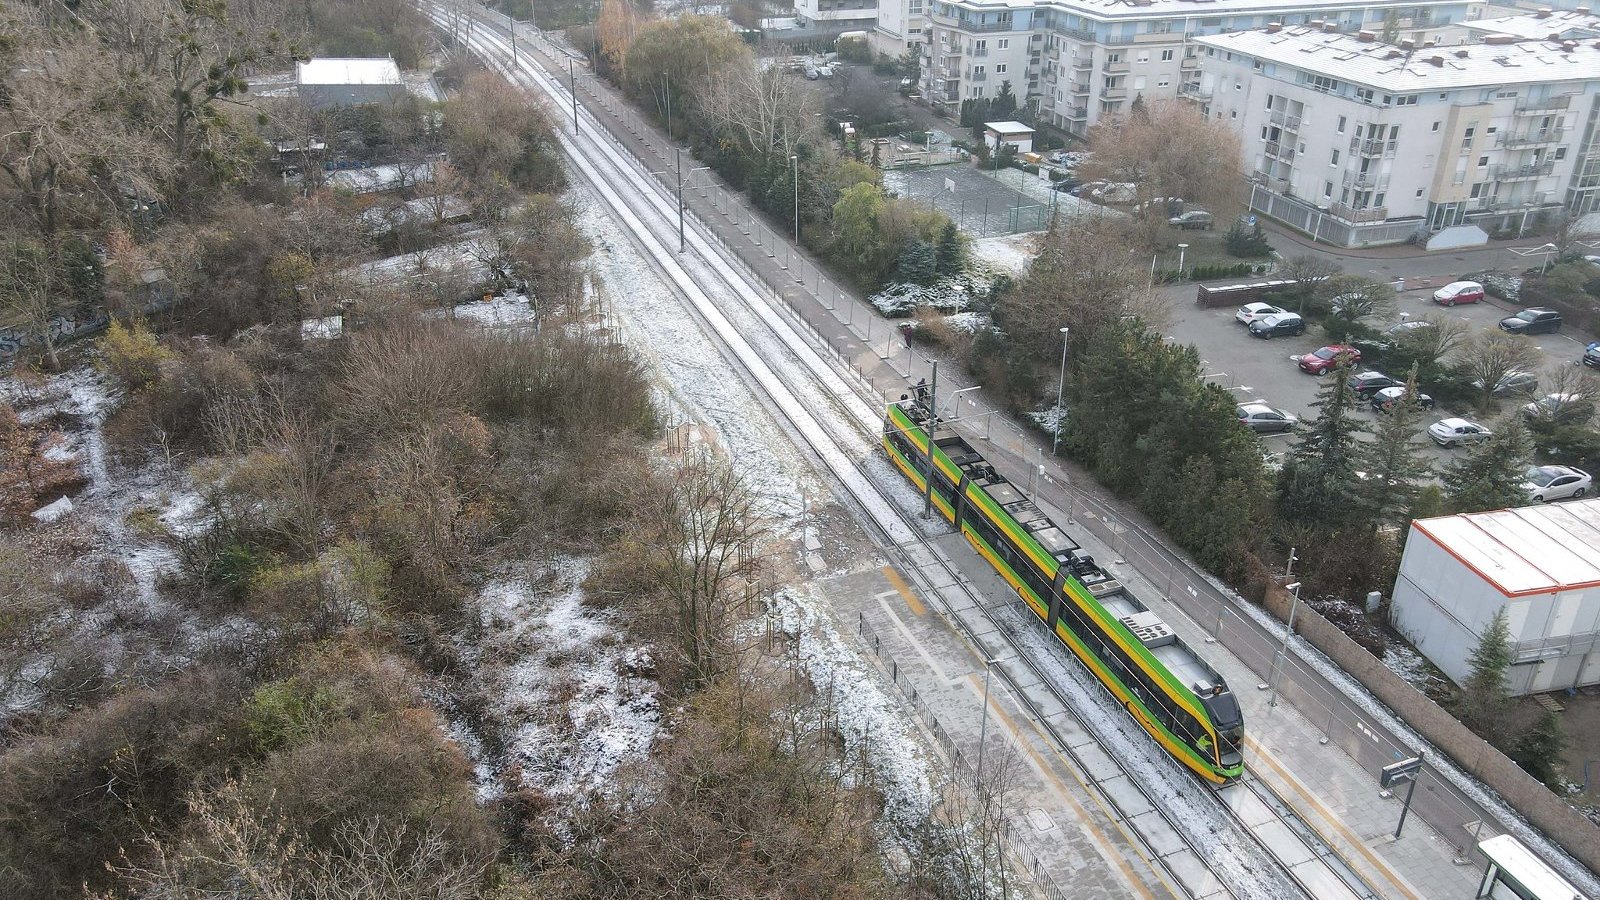 Zdjęcie z testowych przejazdów tramwajów po trasie kórnickiej